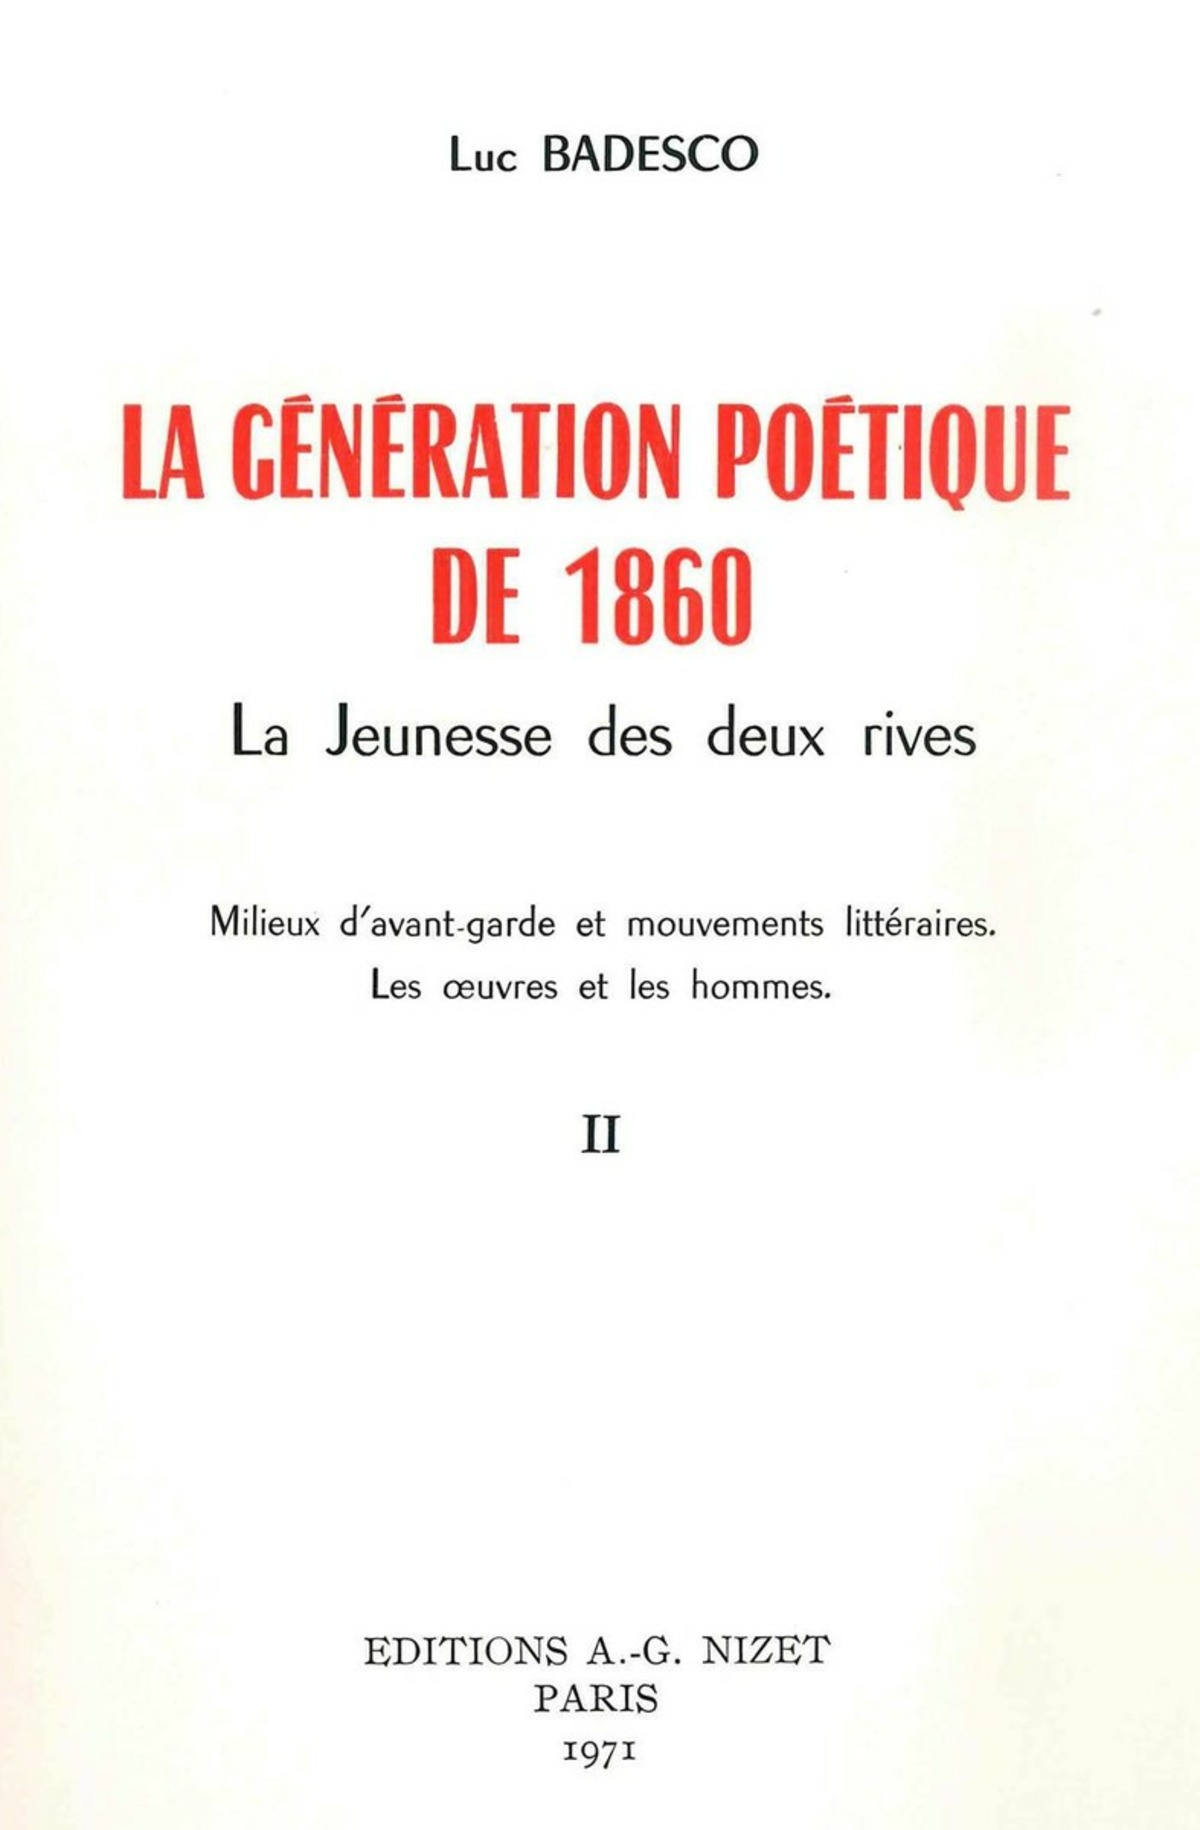 La Génération poétique de 1860